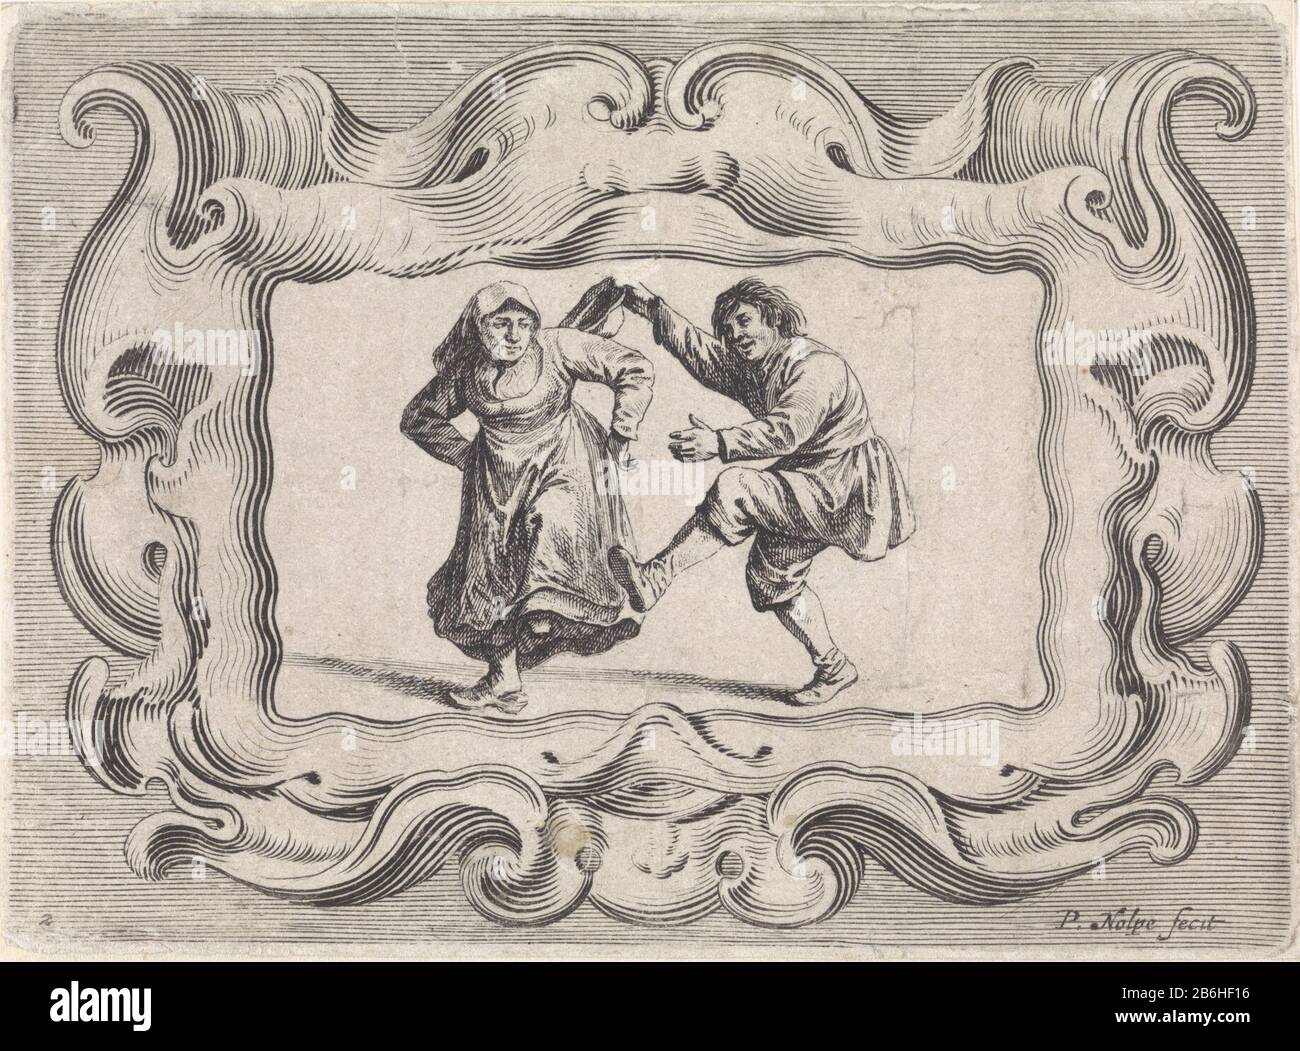 Una coppia contadina danzante. L'uomo tiene il suo cappello in mano. L'idea è contenuta in una cartuccia. La stampa fa parte di una serie di scene del boerenleven. Produttore : printmaker Pieter Nolpe (edificio elencato), progettato da Pieter Jansz. QuastPlaats manufacture: Amsterdam Date: 1623 - 1653 Caratteristiche Fisiche: Engra e materiale di incisione: Carta Tecnica: Engra (processo di stampa) / dimensioni di incisione: Bordo della lastra: H 106 mm × W 145 mm Soggetto: Farmersone Coppia danza; uomo e donna danza come una coppia Foto Stock